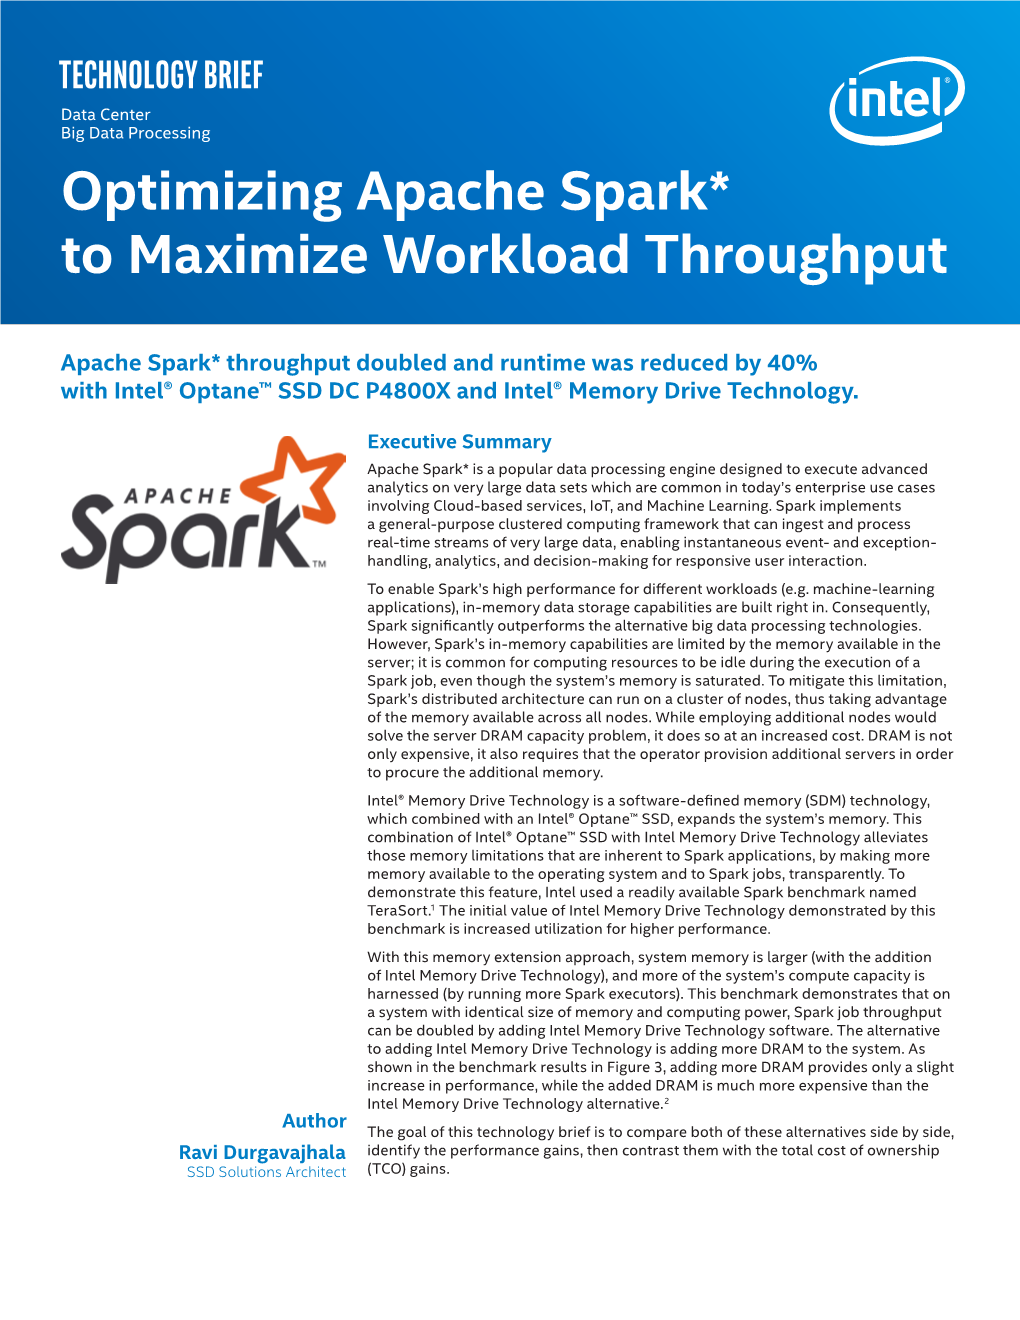 Optimizing Apache Spark* to Maximize Workload Throughput